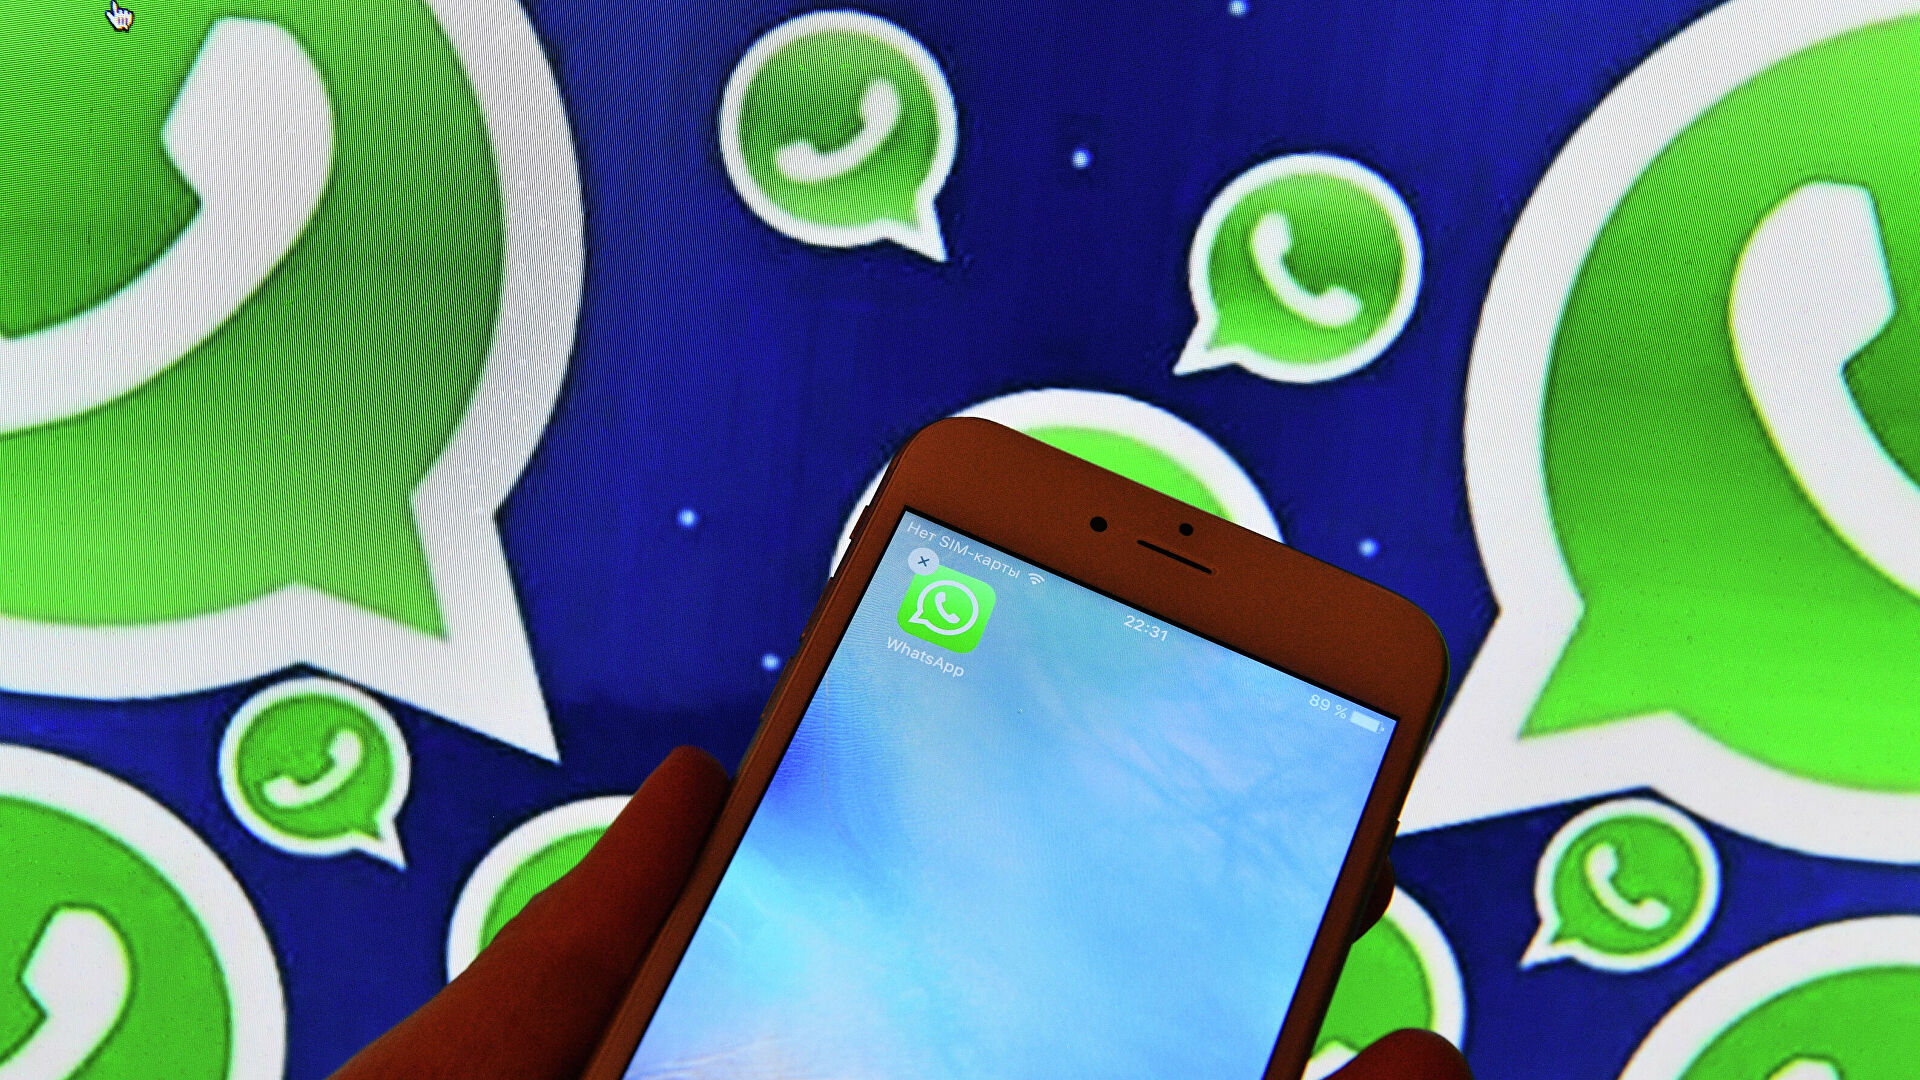 "Читать позже": В WhatsApp появится новая функция